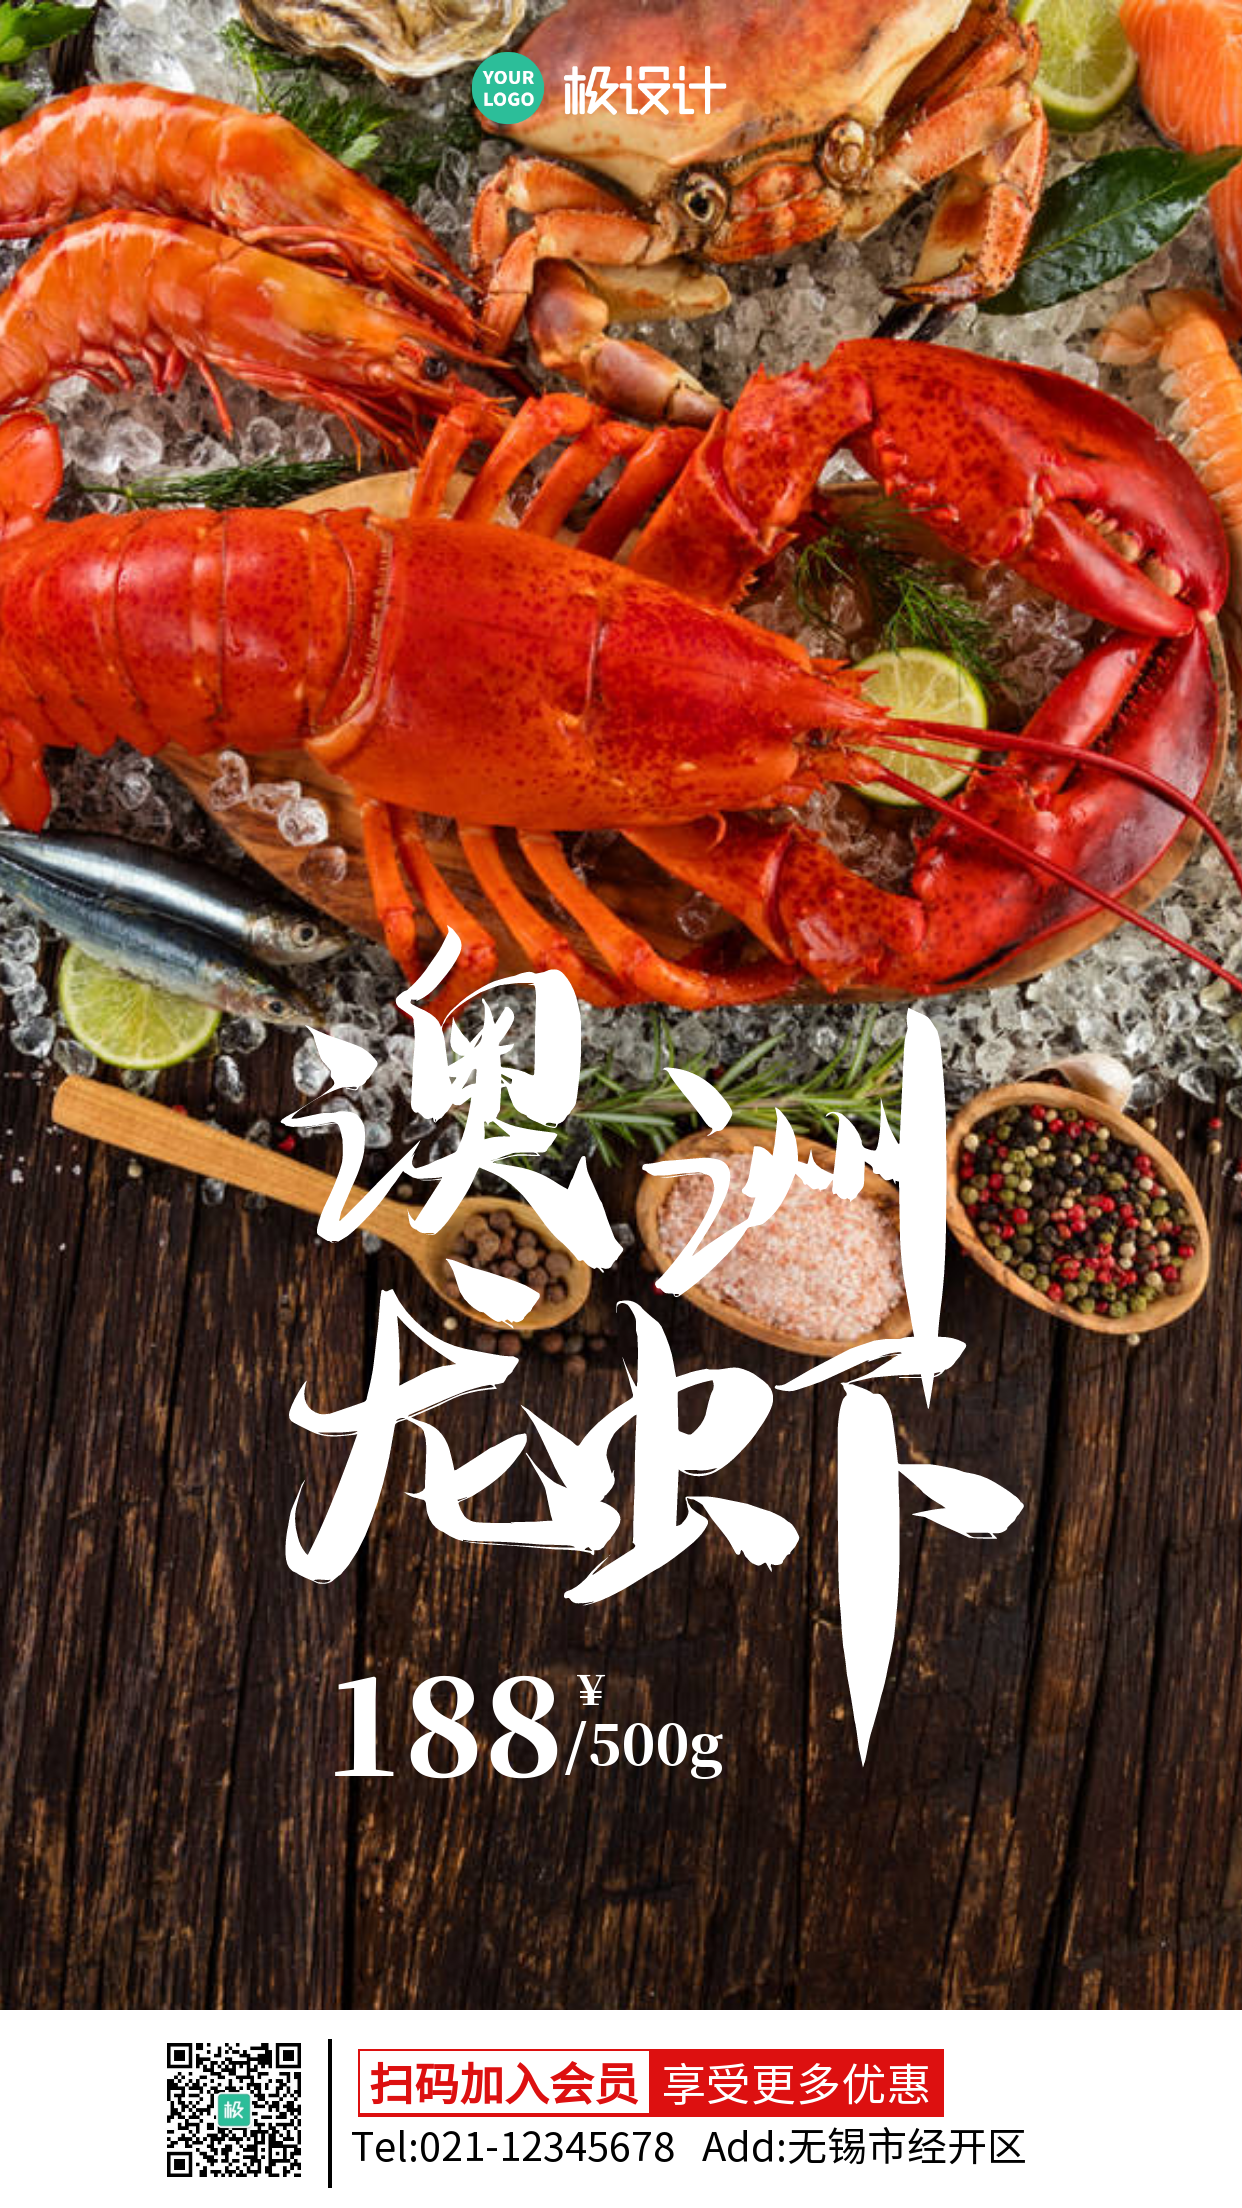 美味海鲜澳洲龙虾促销摄影图海报